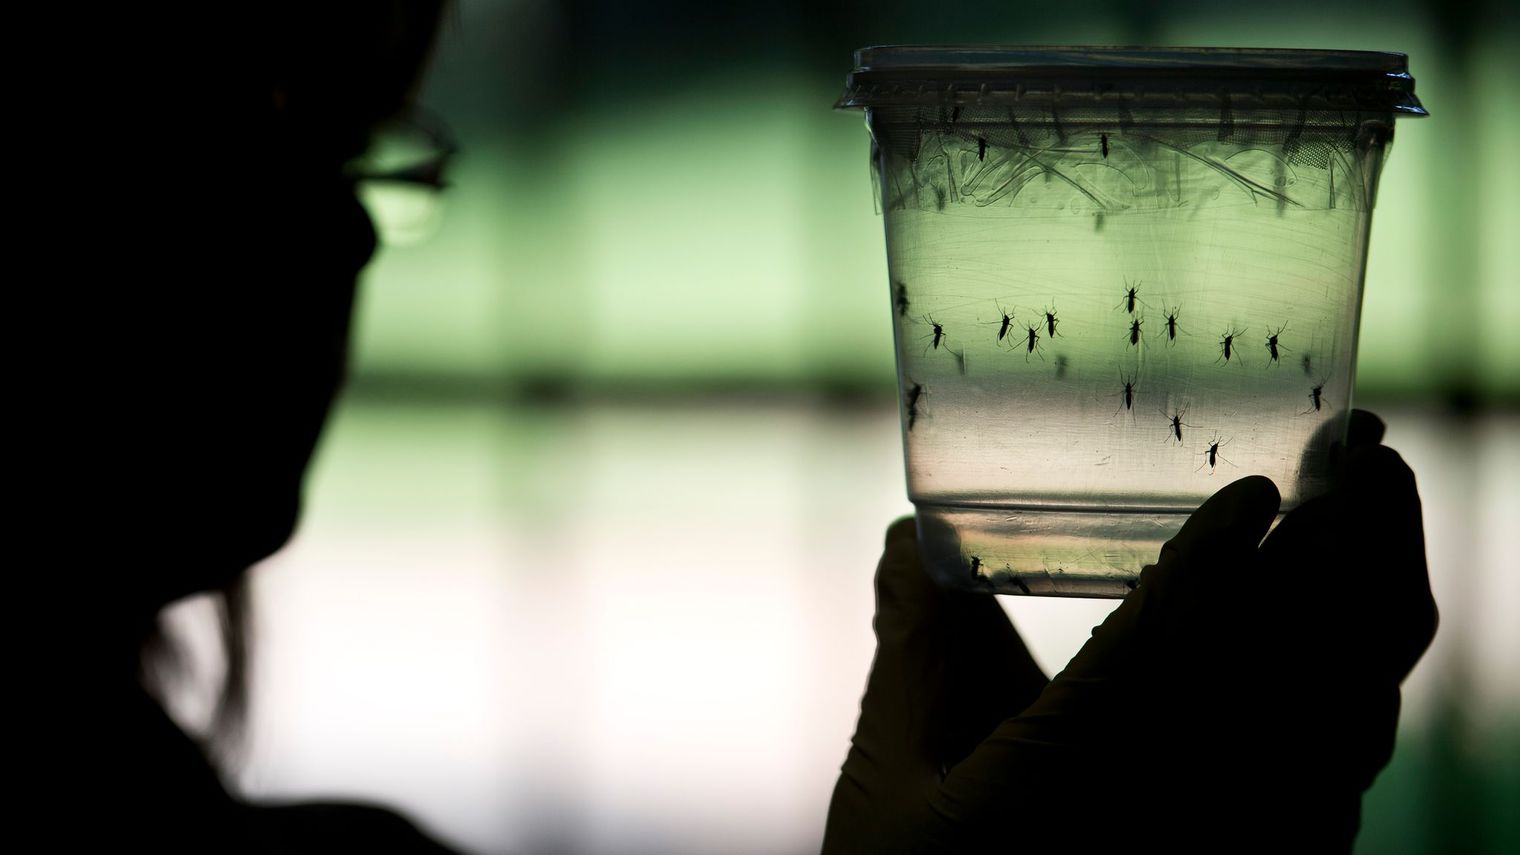     L'épidémie de dengue est terminée en Martinique

